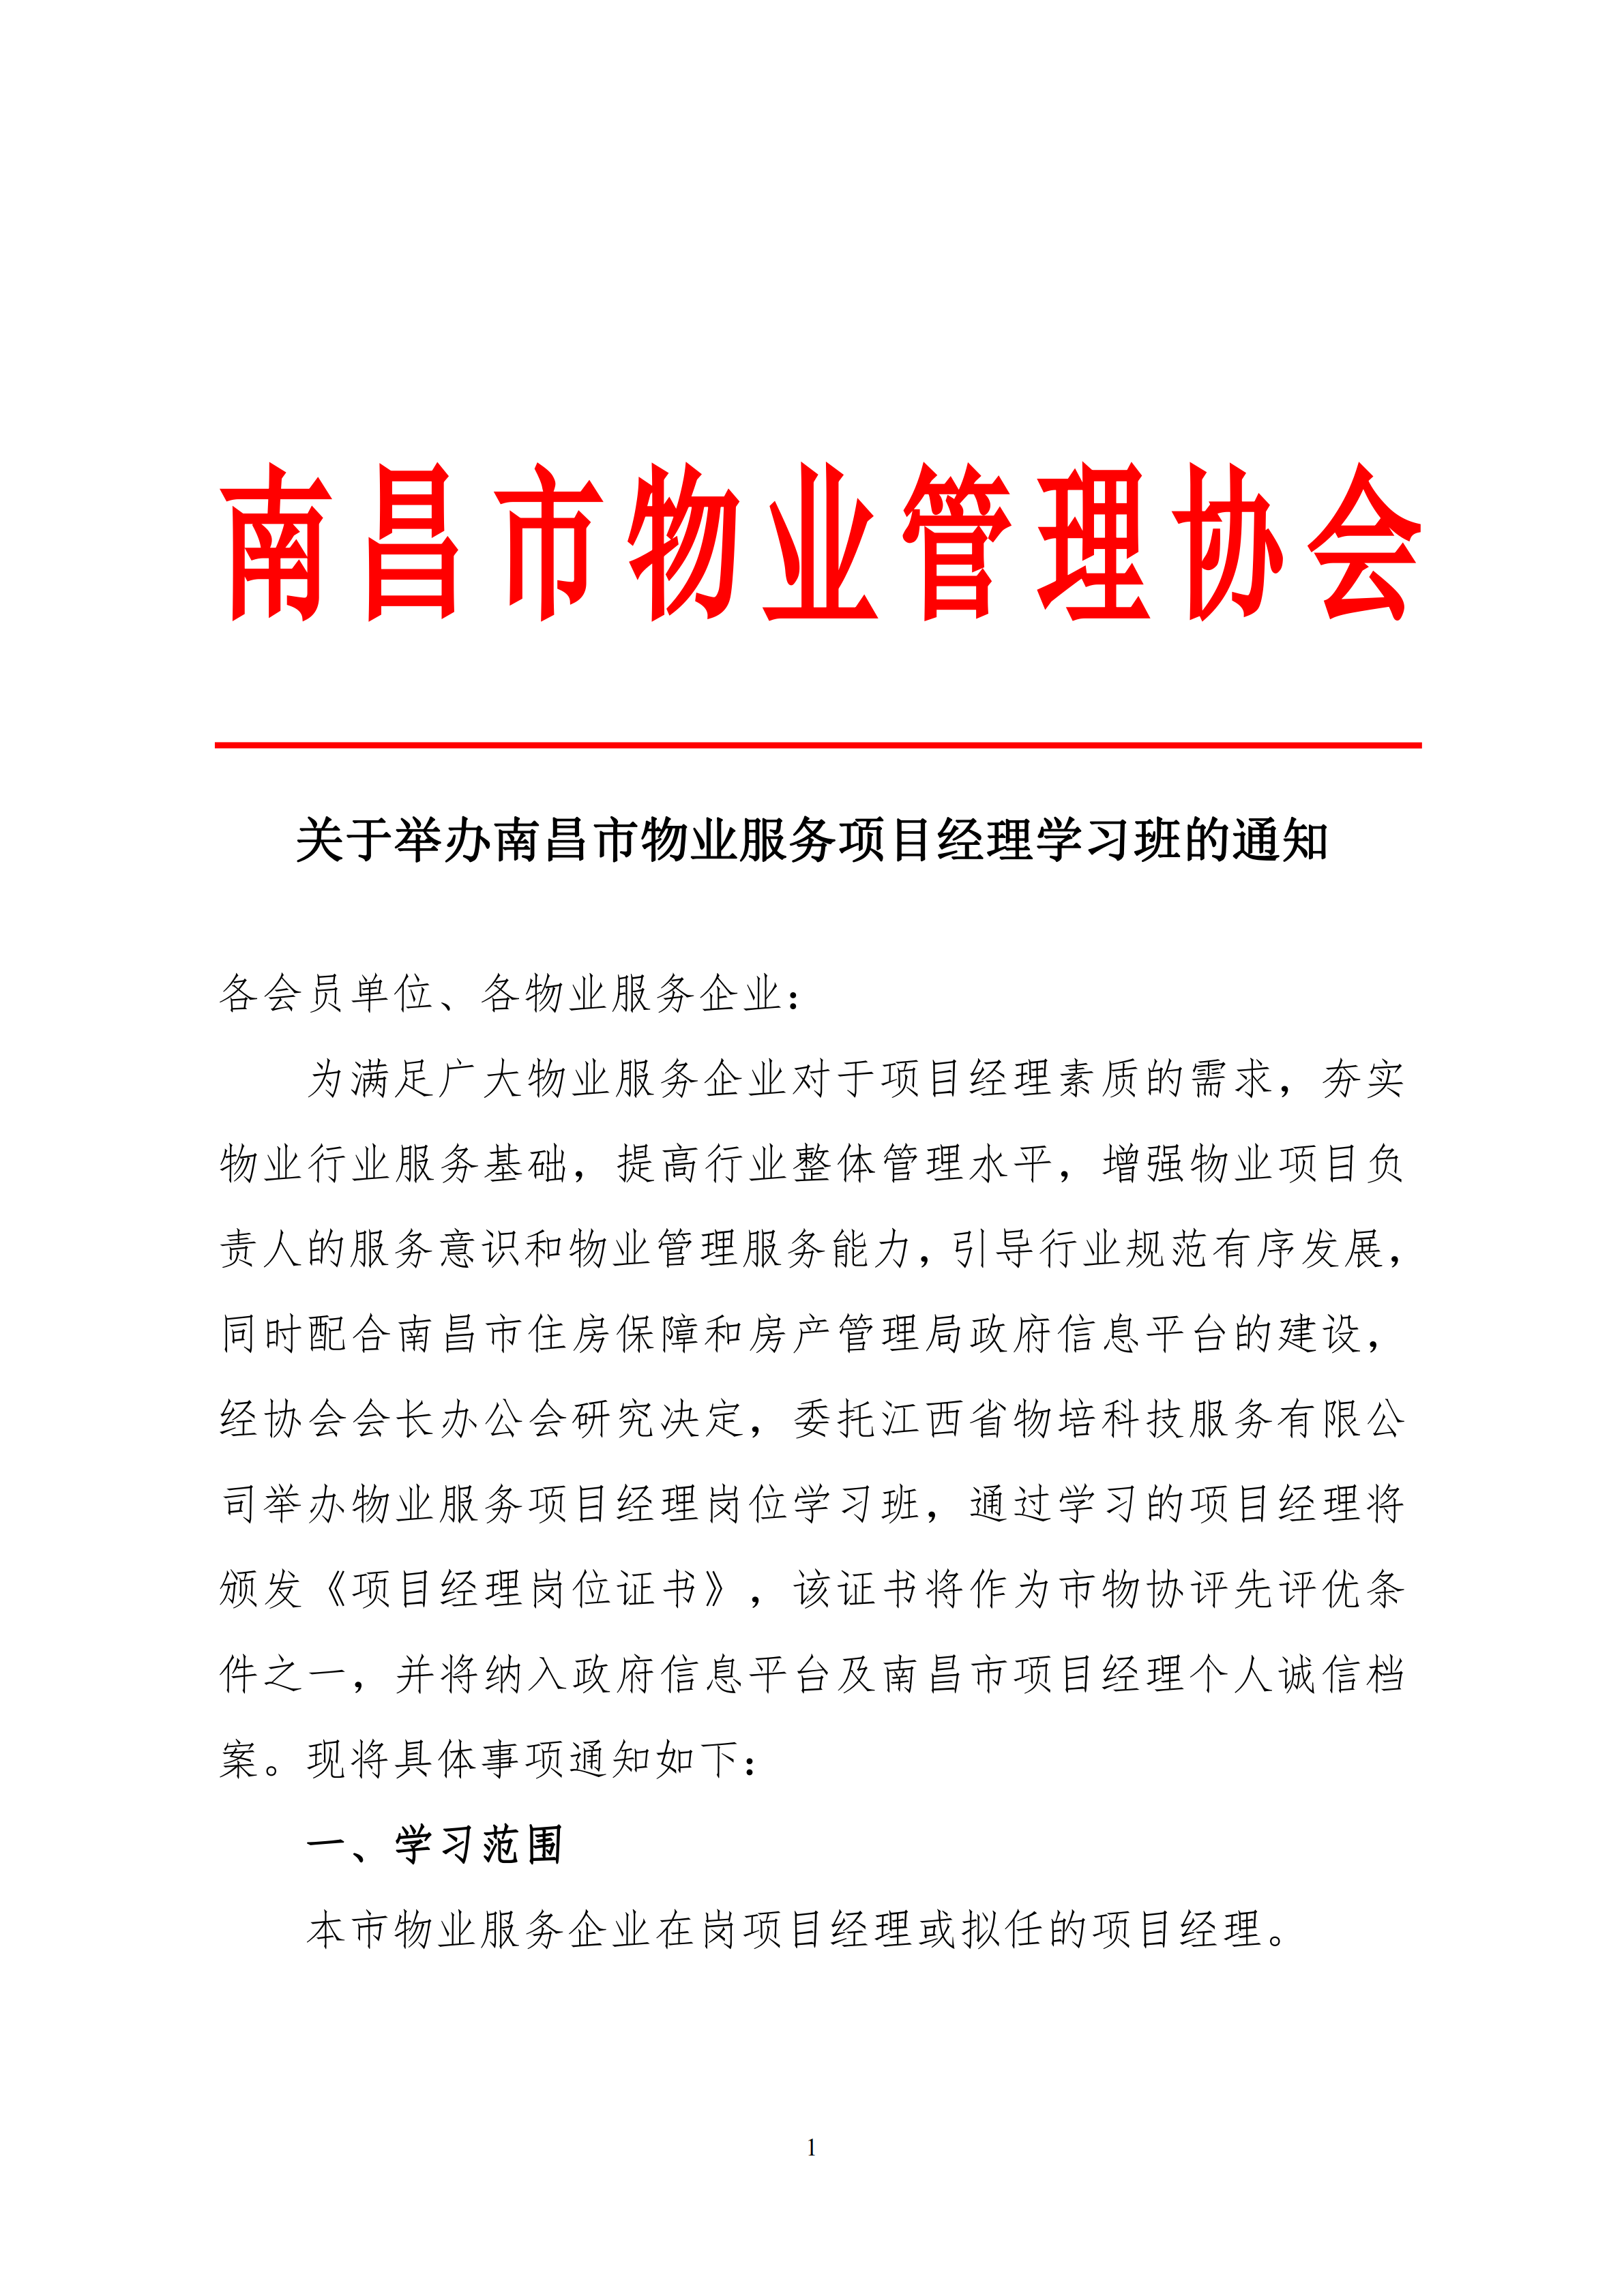 关于举办南昌市物业服务项目经理学习班的通知(2)_00.png